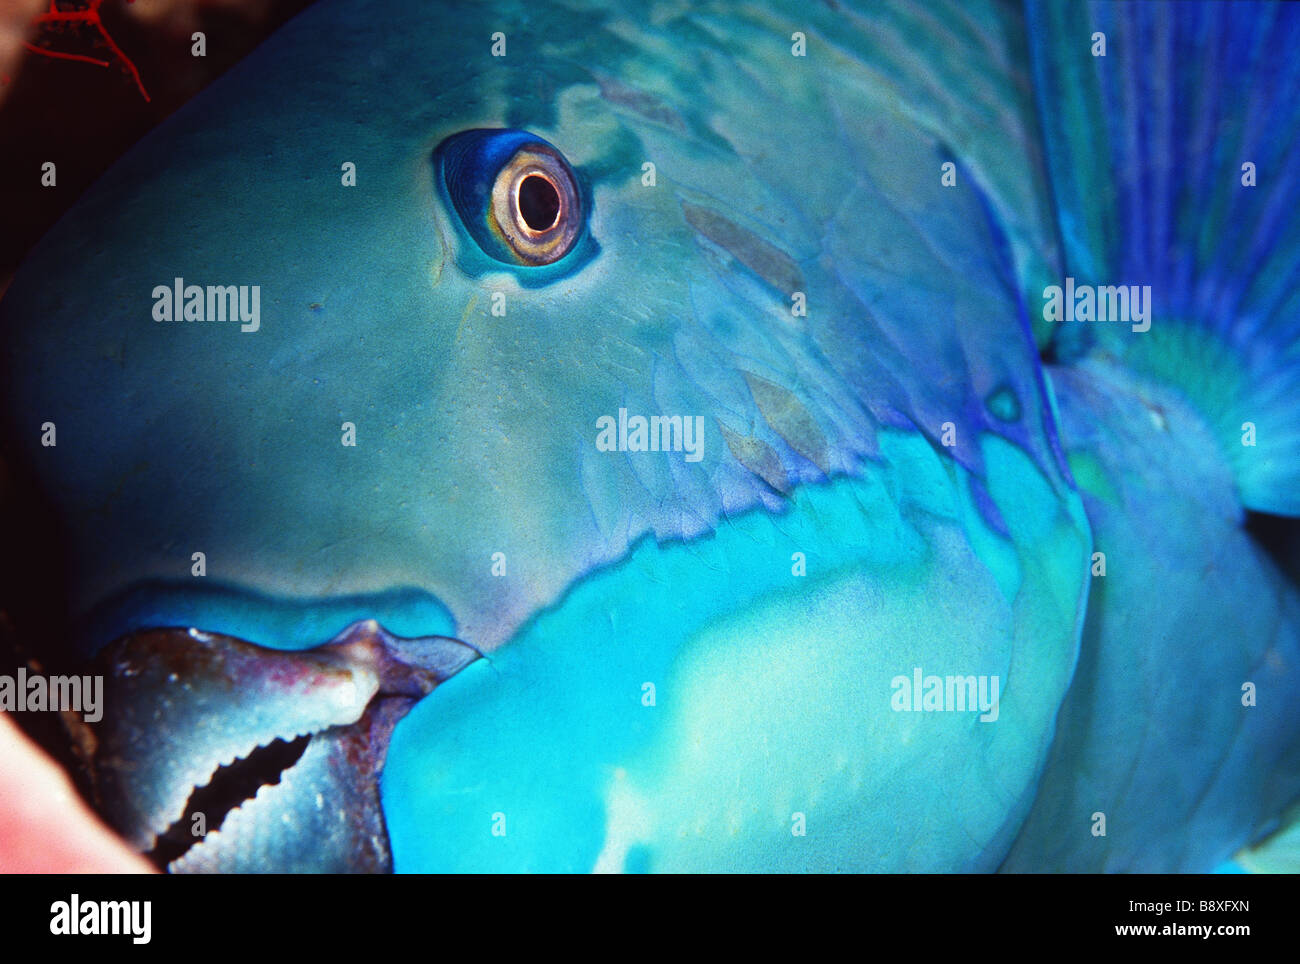 parrot fish portrait Stock Photo